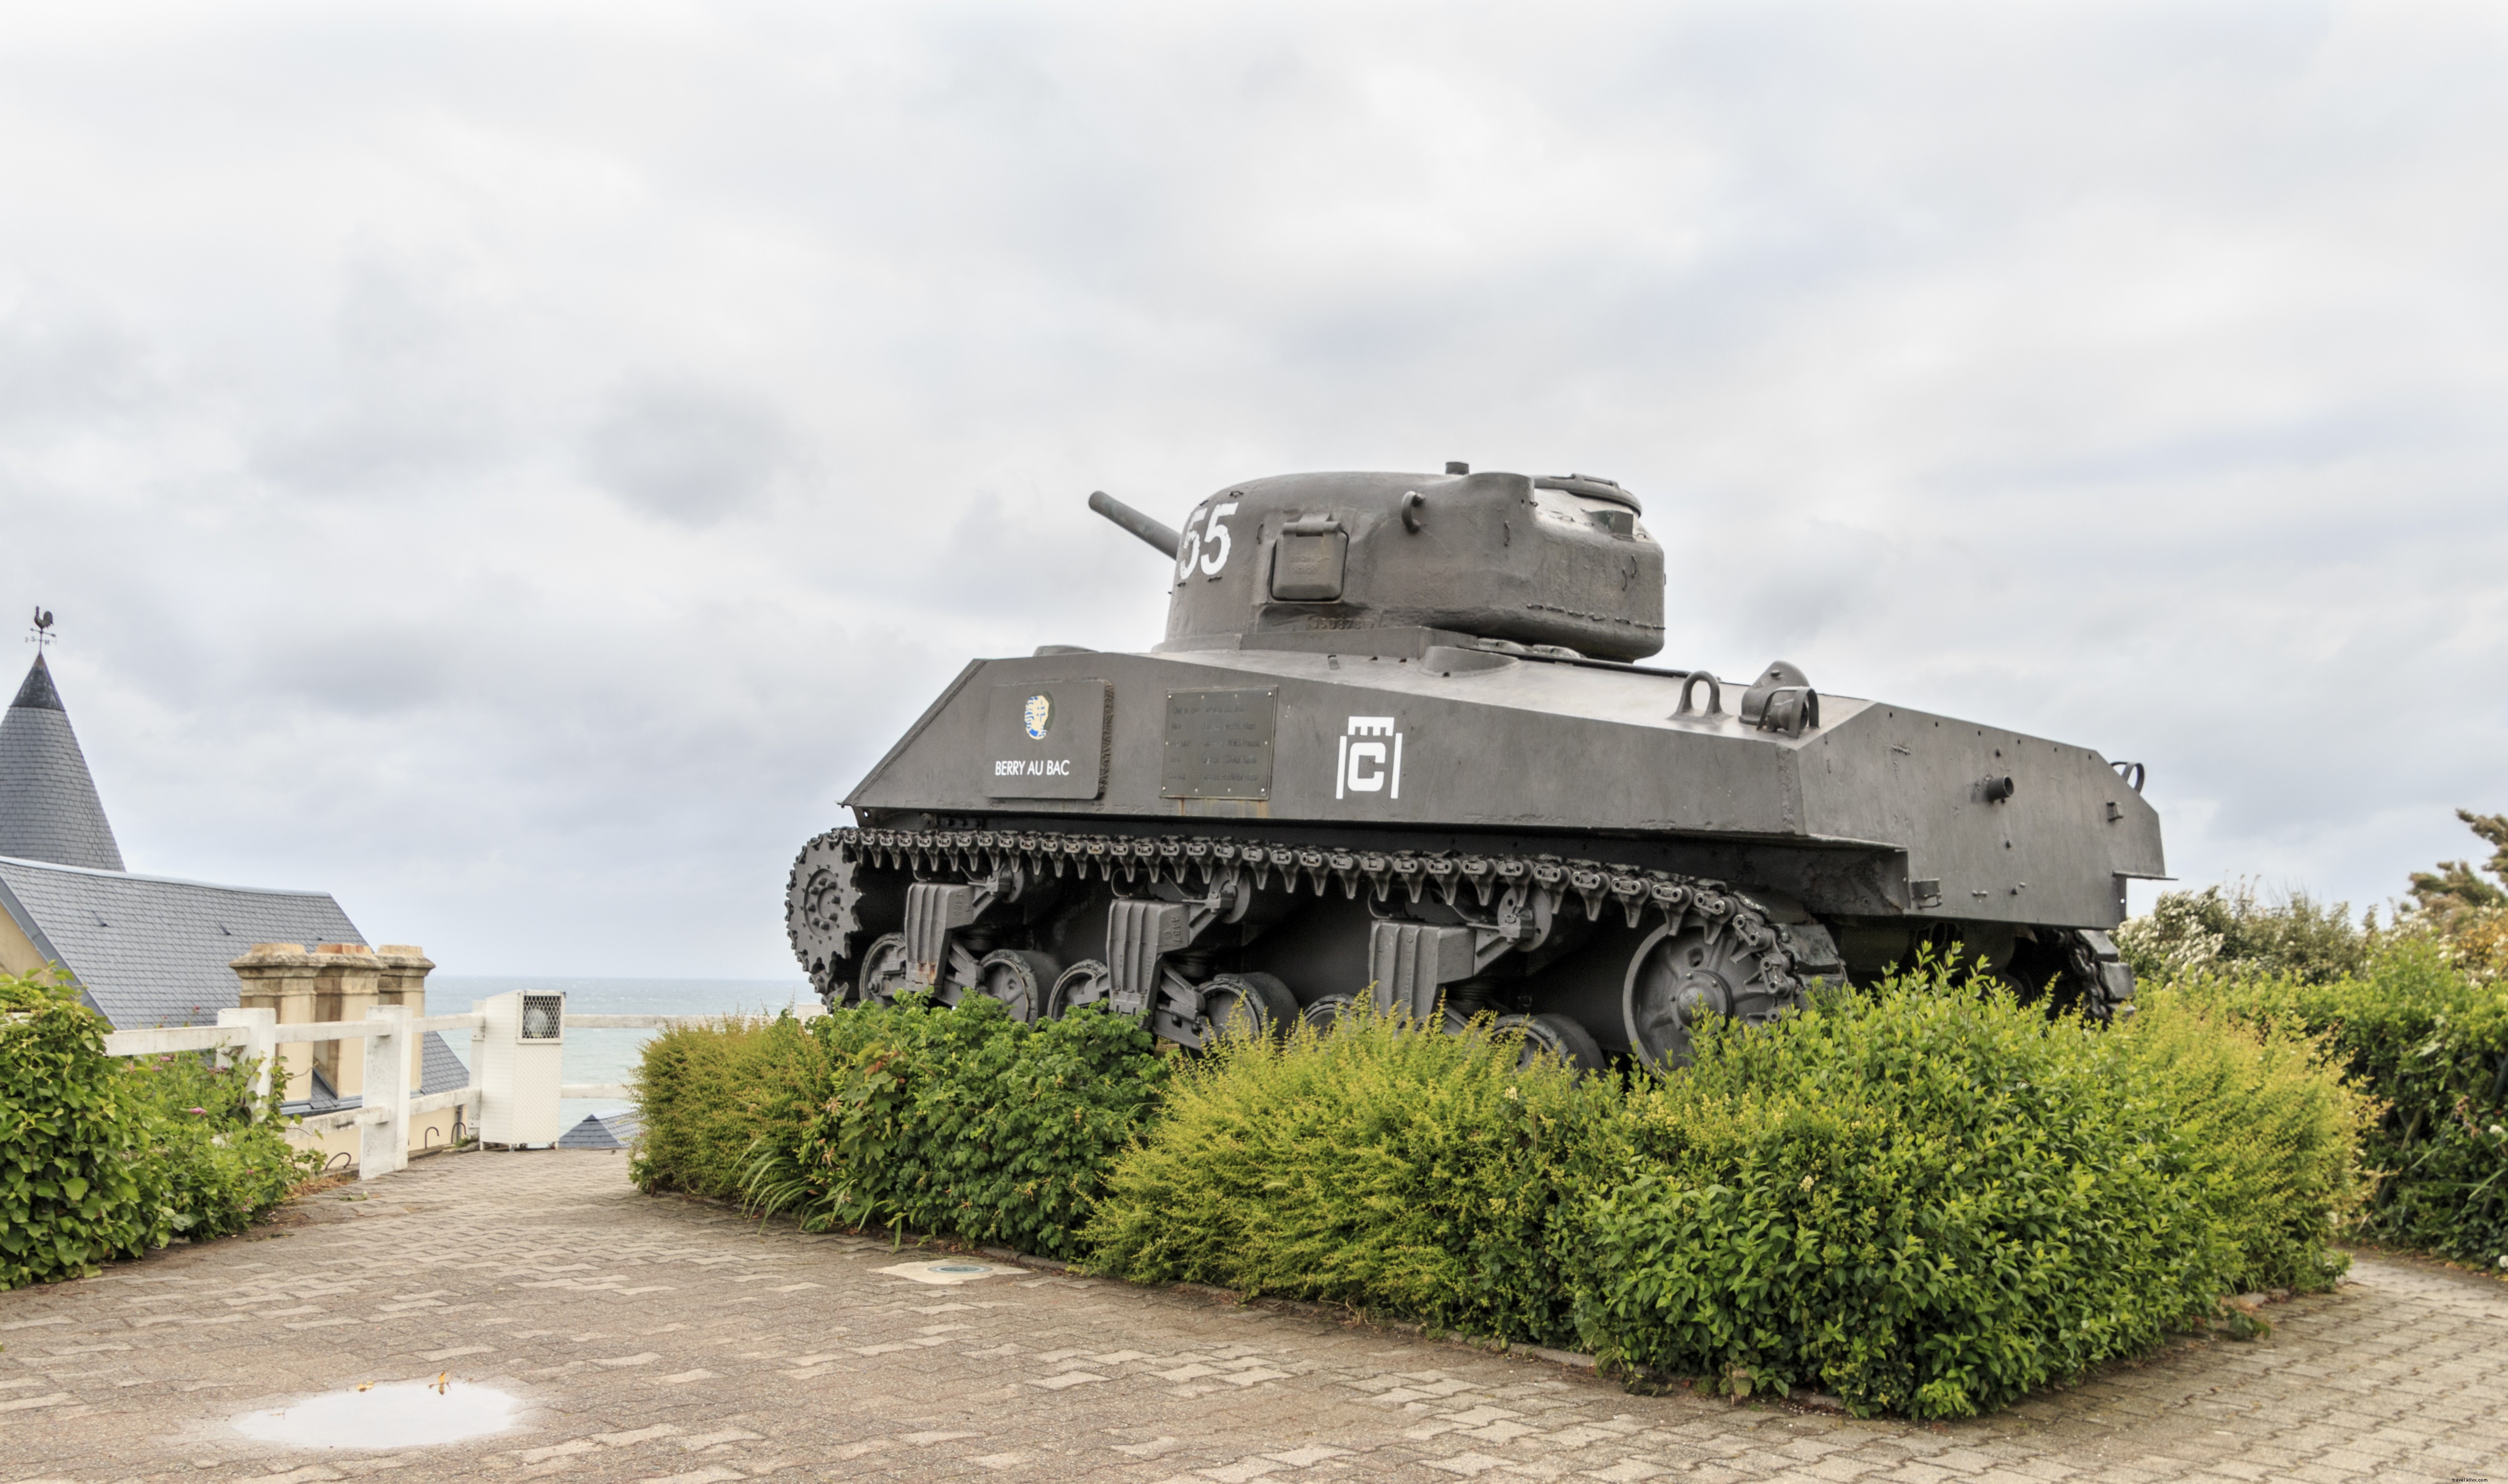 Las playas del día D de Normandía:combinación de historia y belleza natural en el oeste de Francia